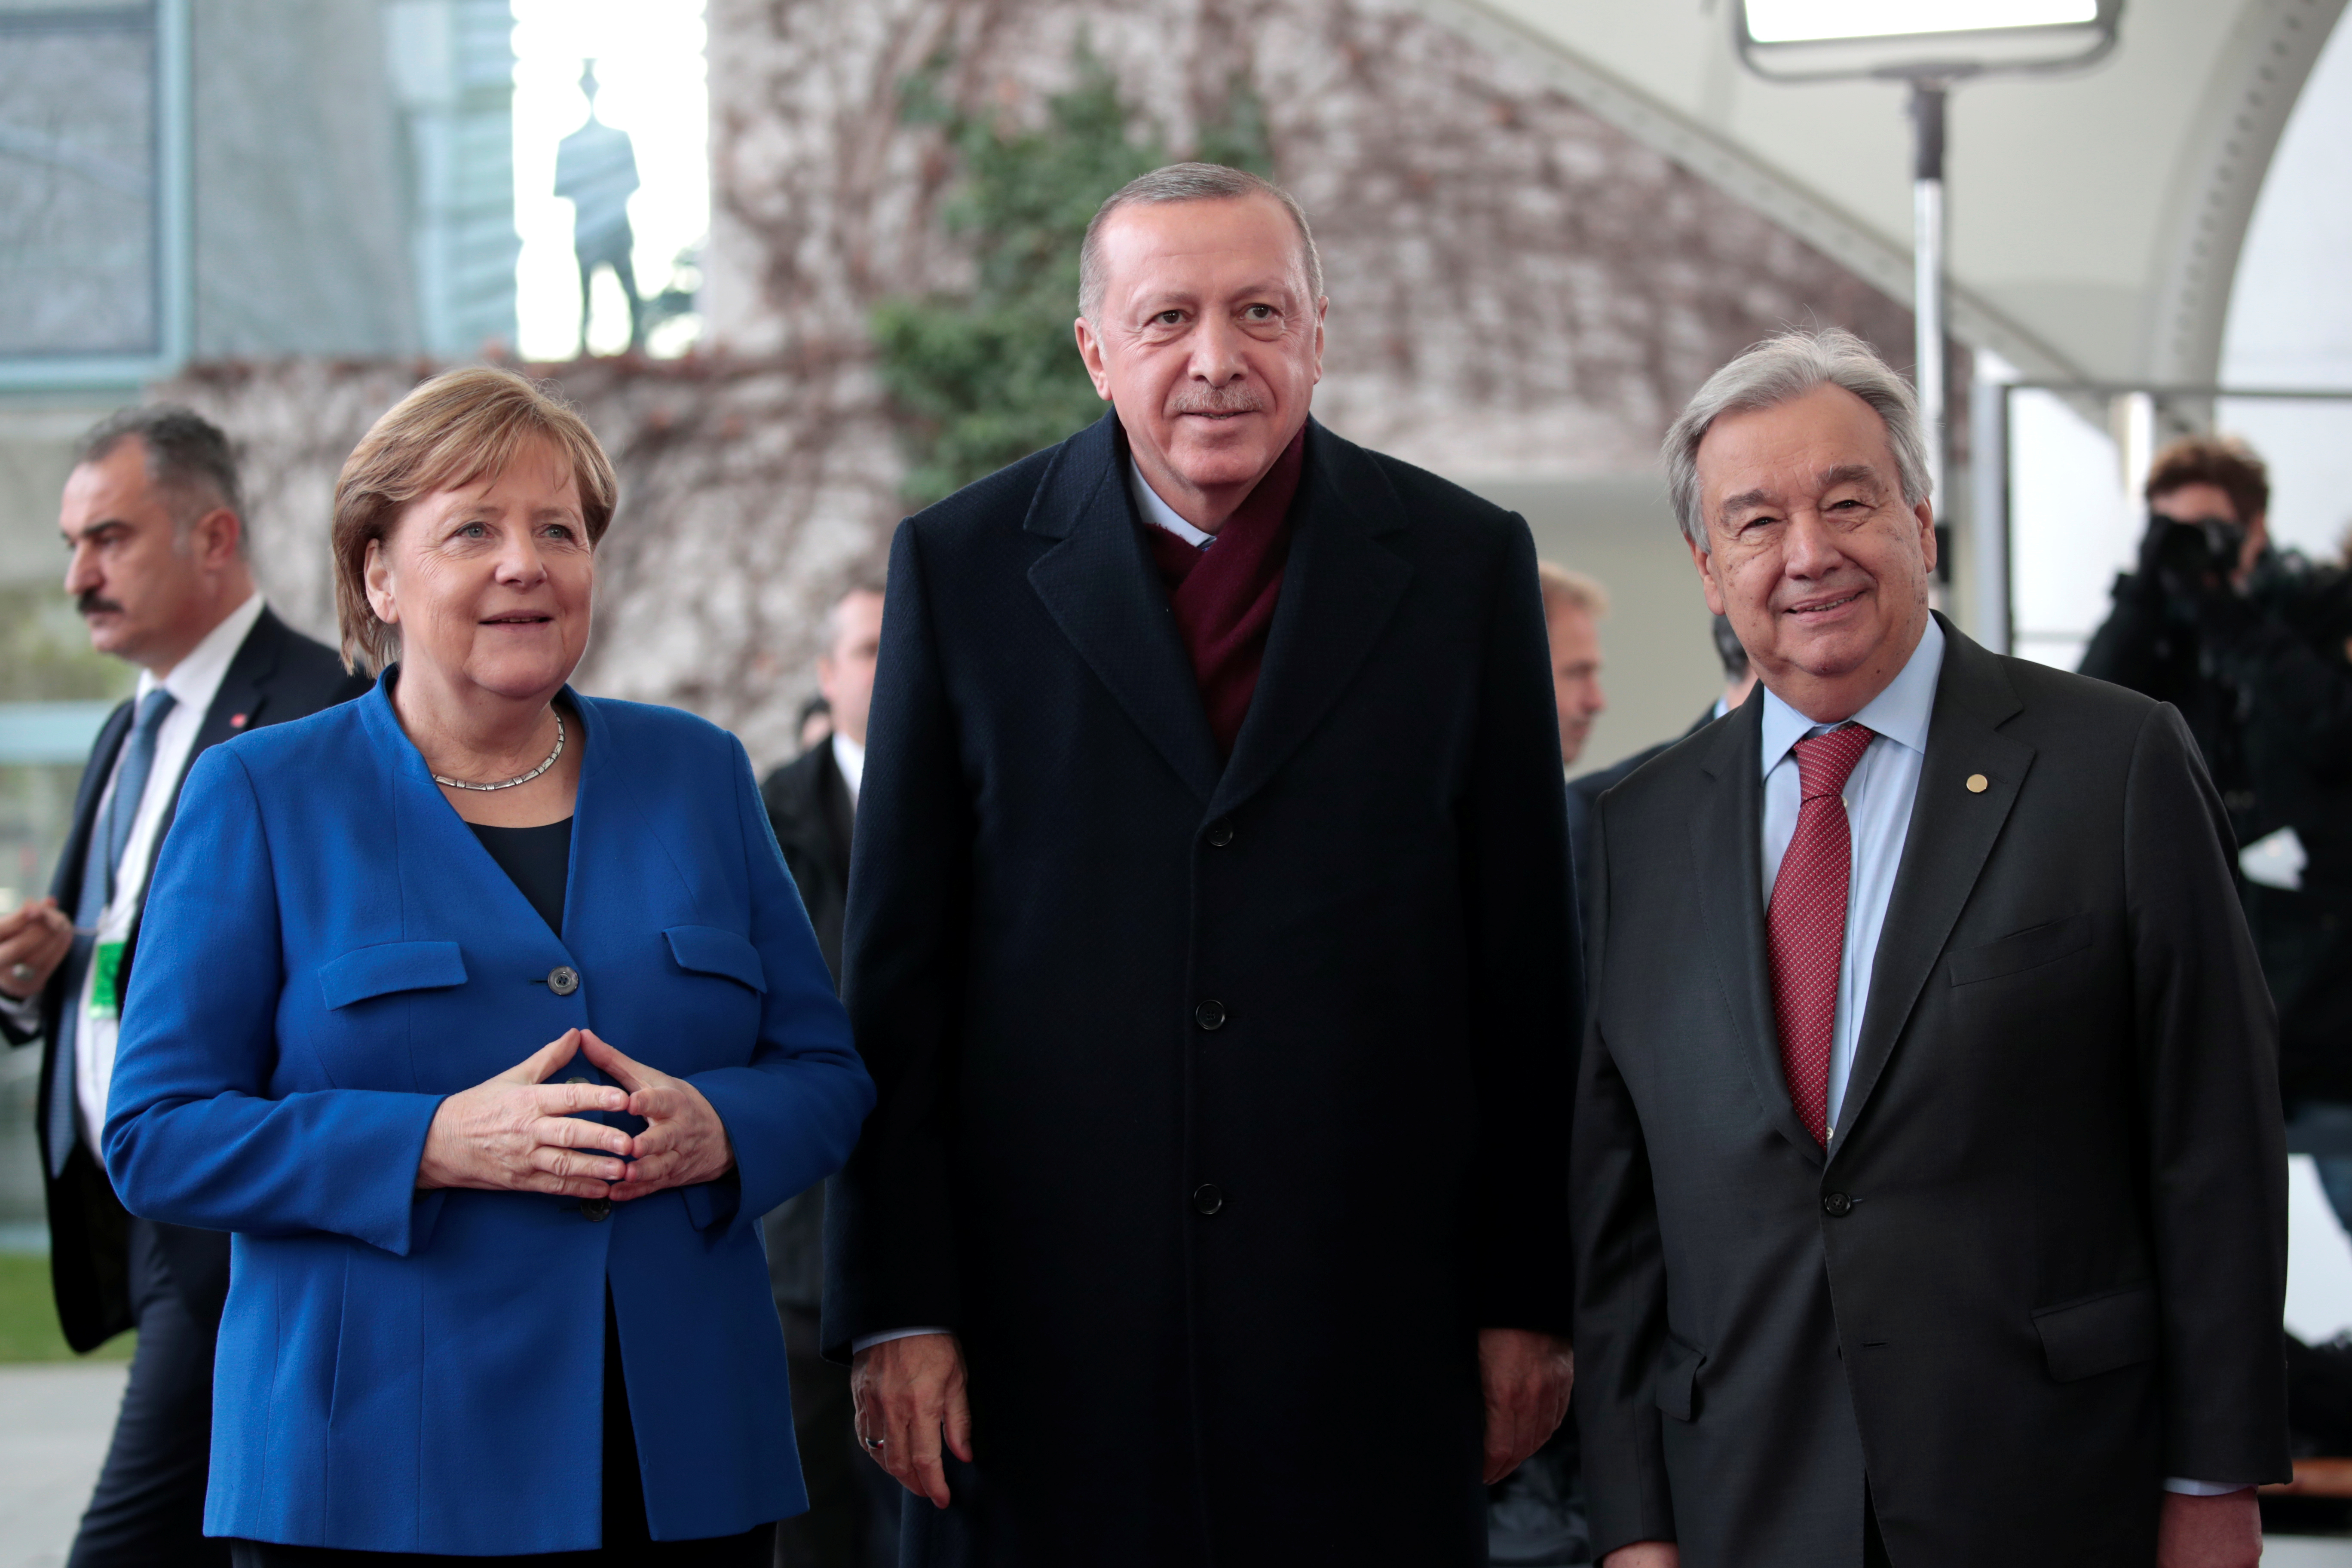 Διάσκεψη Βερολίνου: Το στριπτίζ του Ερντογάν για να φωτογραφηθεί [video]